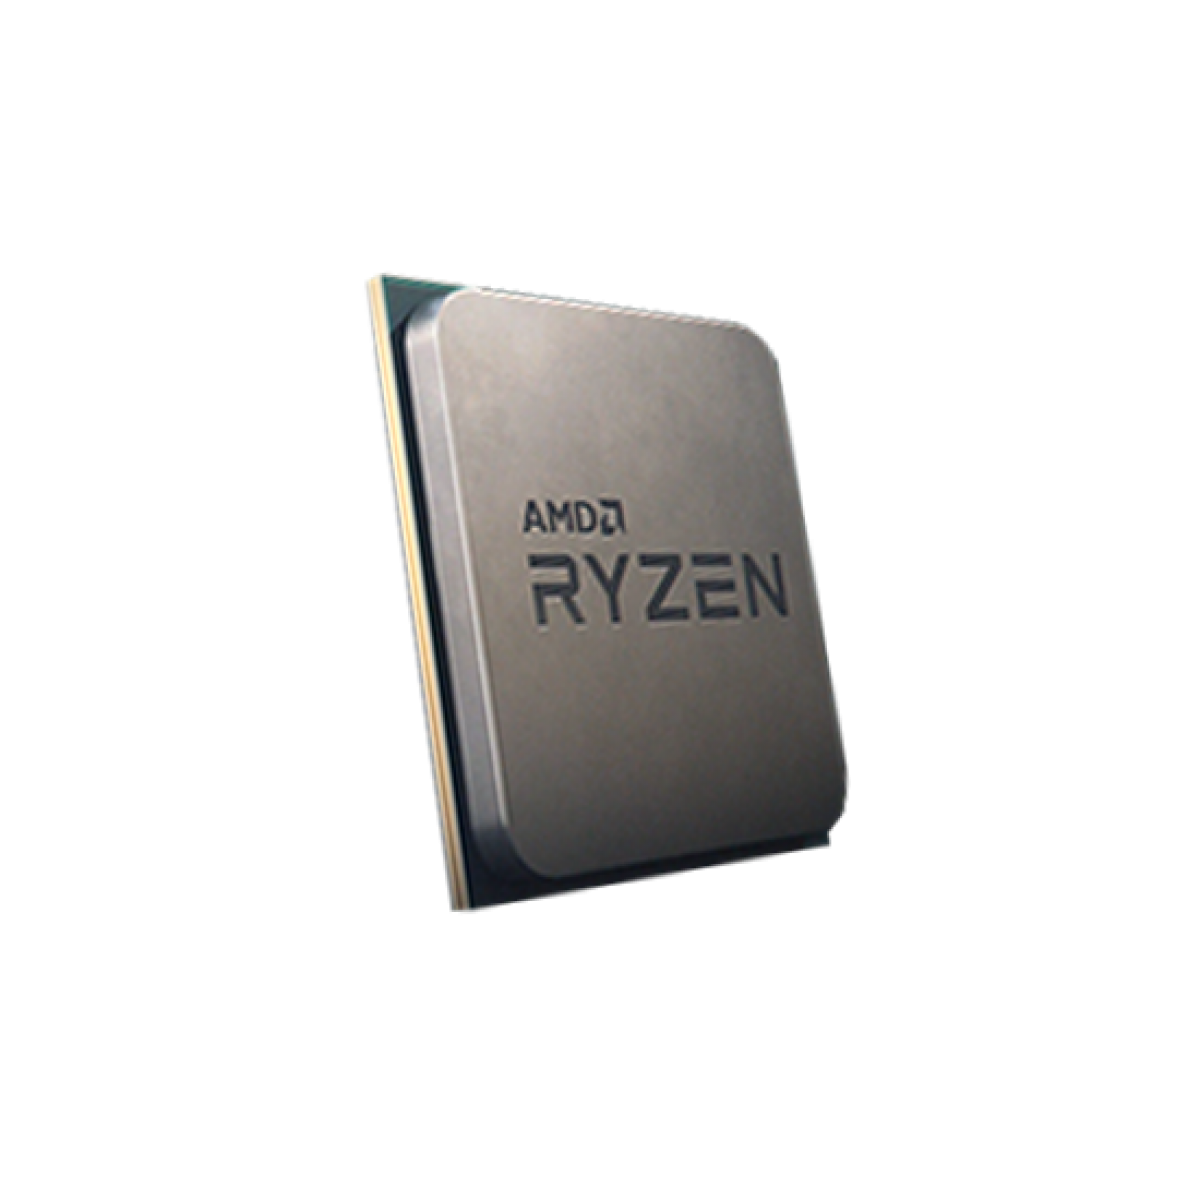 Processador AMD Ryzen 7 3800x 3.9ghz (4.5ghz Turbo), 8-cores 16-threads, AM4, S/ Video, S/Cooler, Sem Caixa